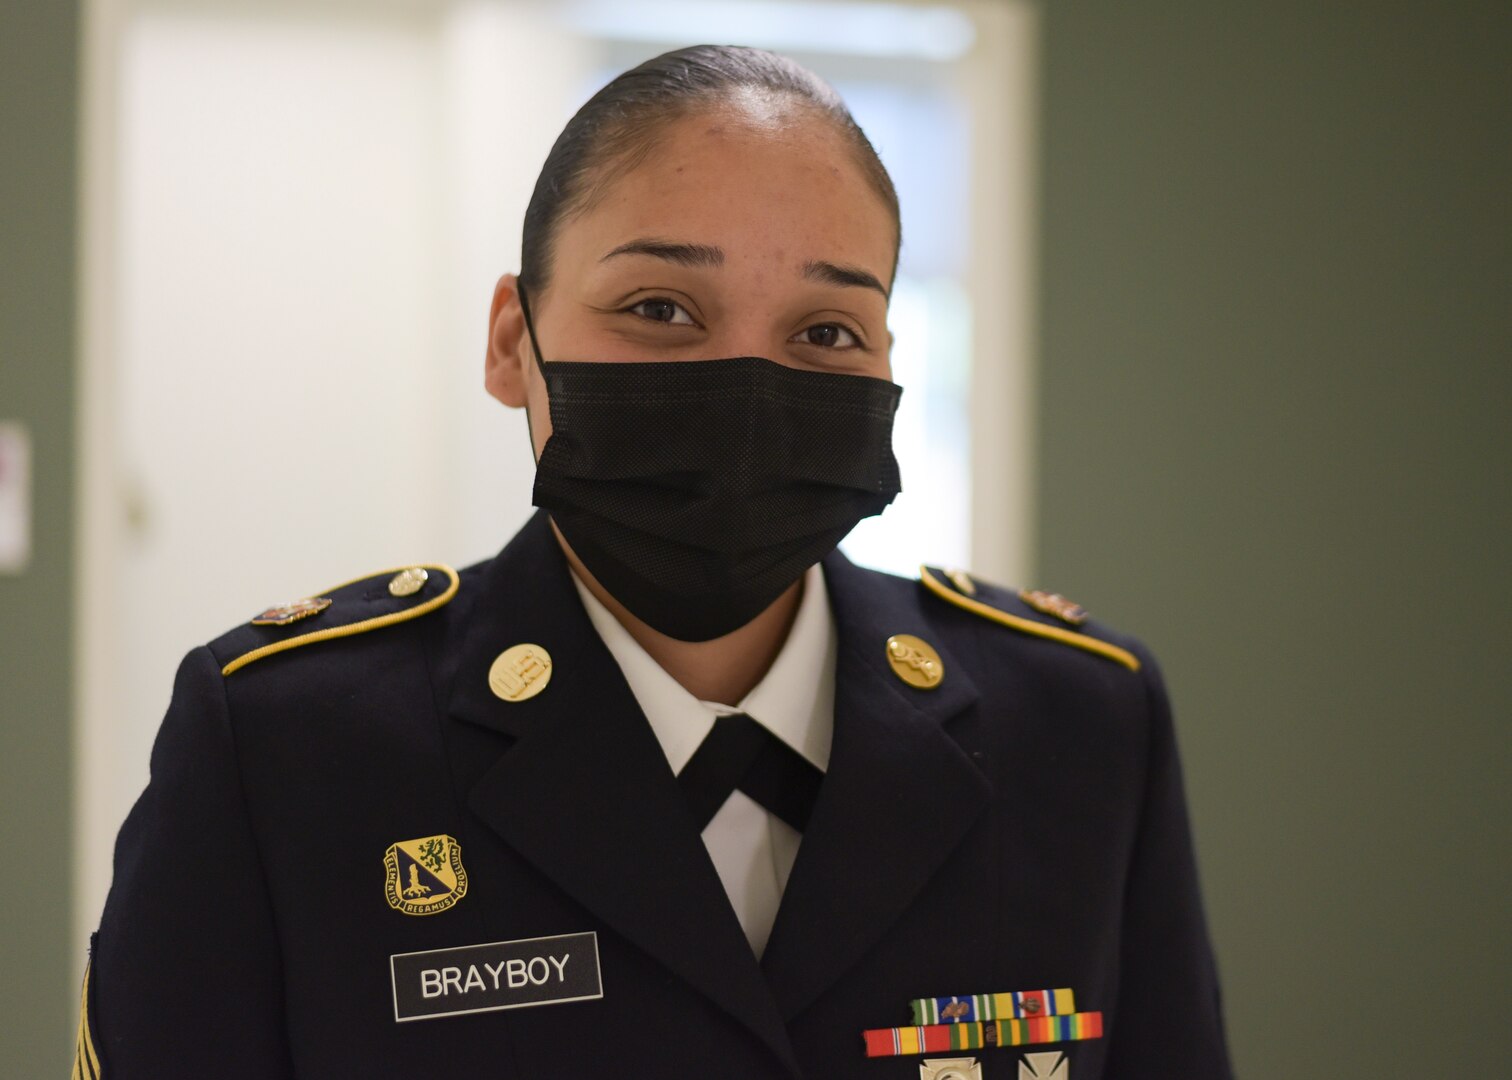 Staff Sgt. Brittany Brayboy